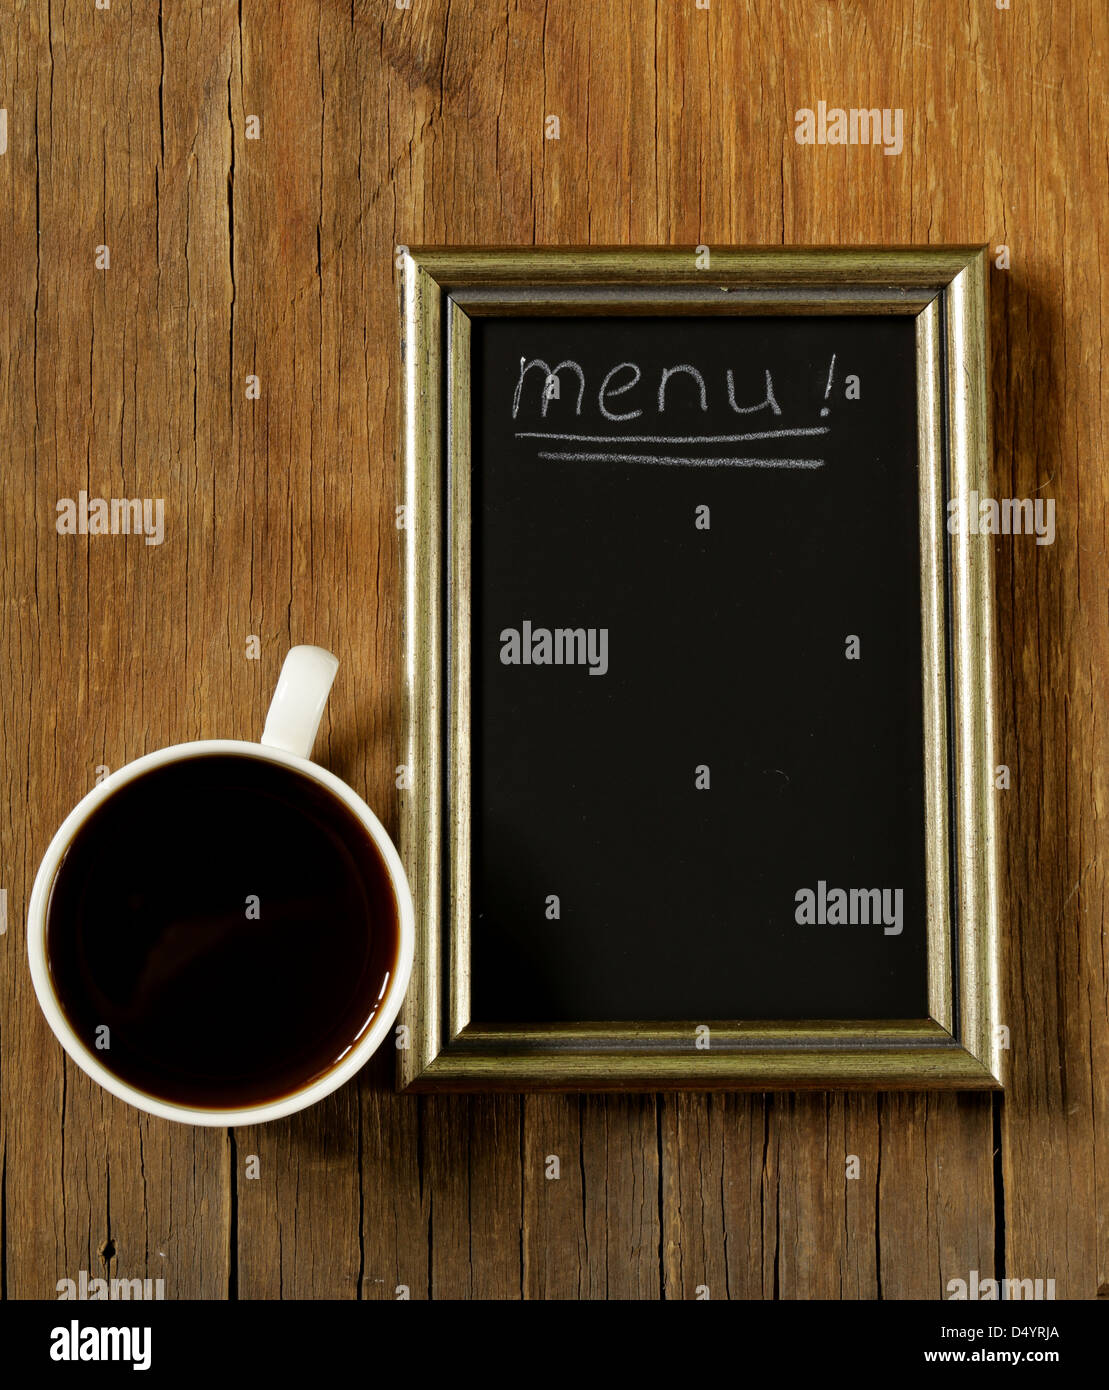 Tasse à café et pain avec beurre avec tableau noir ardoise Banque D'Images